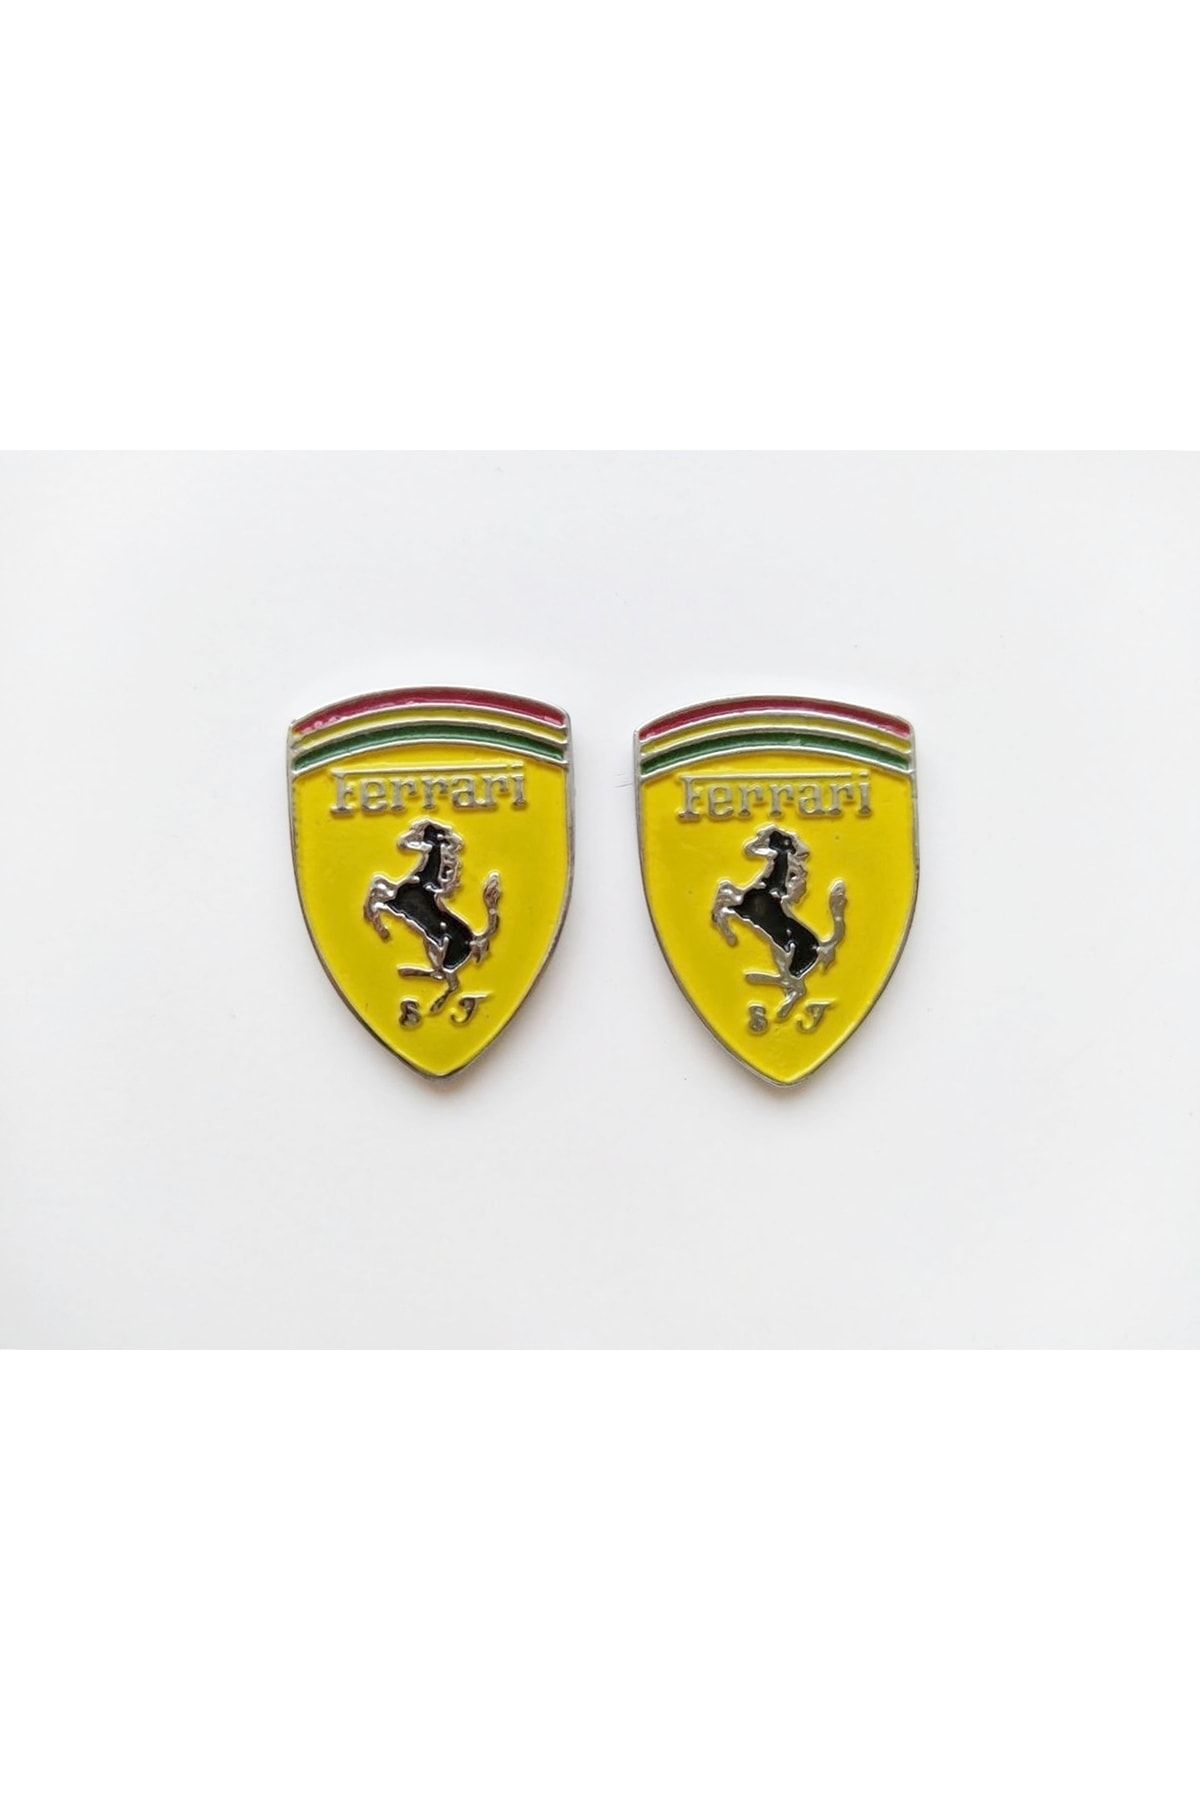 adagarage Ferrari Döküm Arma Ferrari Çamurluk Arması Yan Direk Arması Ferrari Logo Etiket